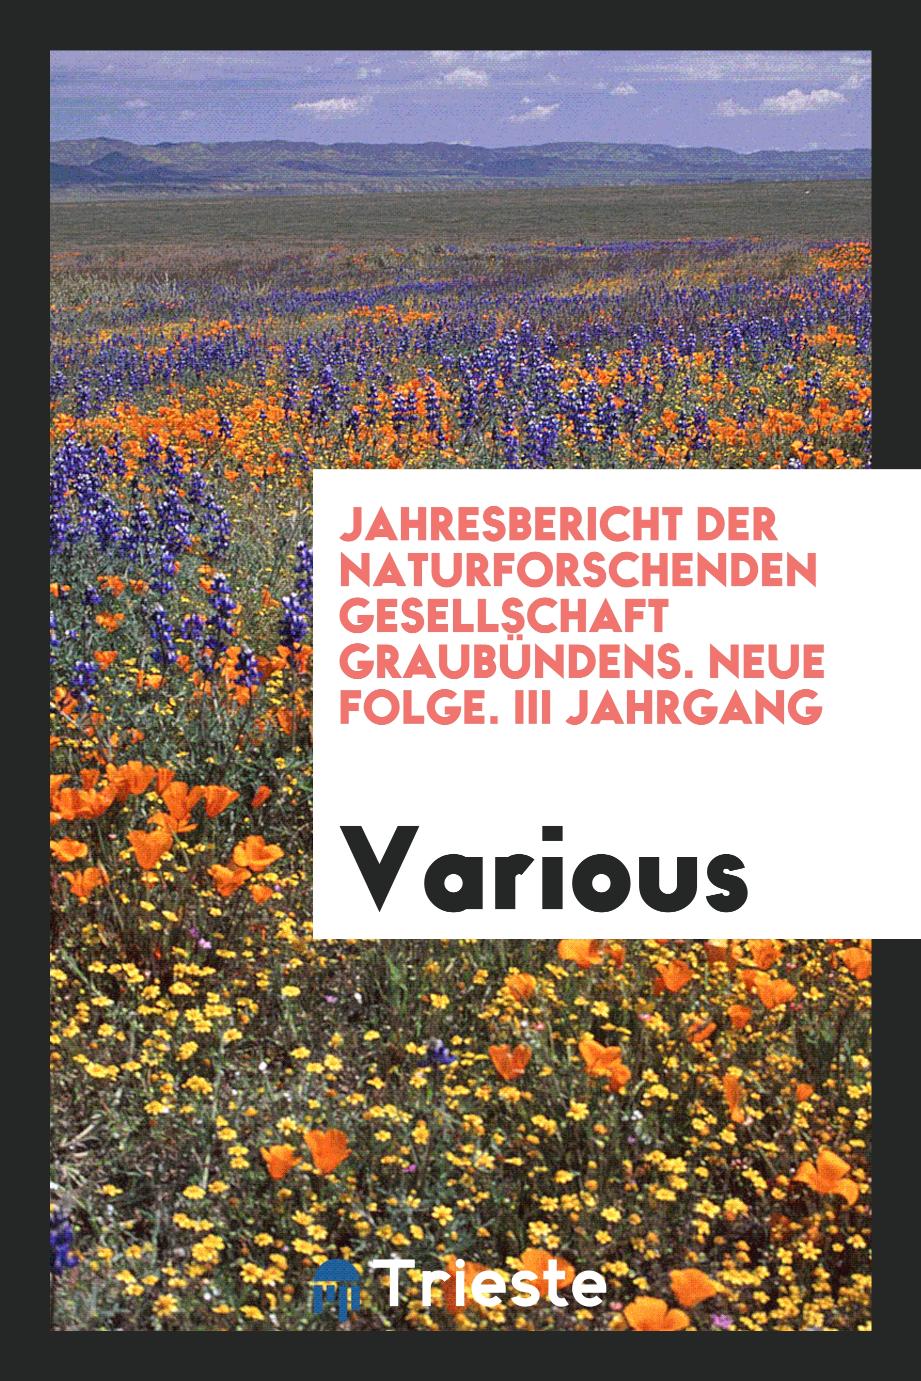 Jahresbericht der Naturforschenden Gesellschaft Graubündens. Neue folge. III Jahrgang